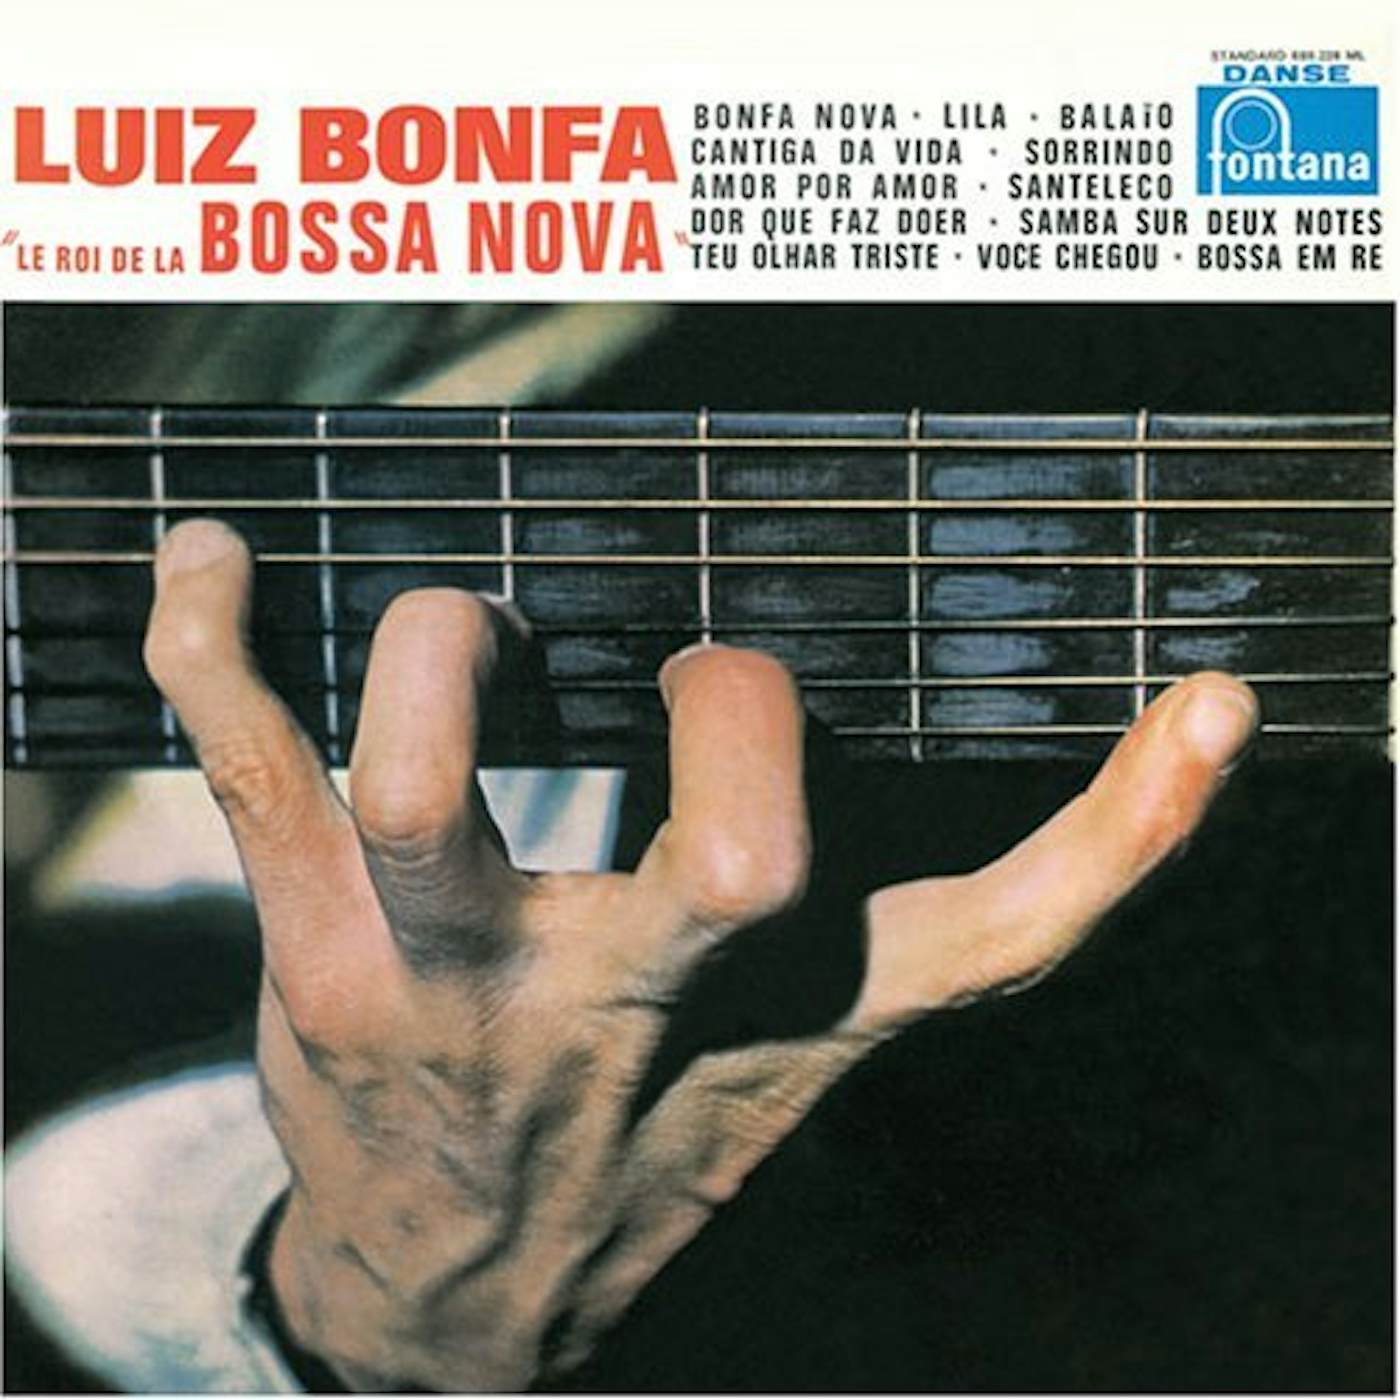 Luiz Bonfá LE ROI DE LA BOSSA NOVA: THE KING OF BOSSA NOVA CD